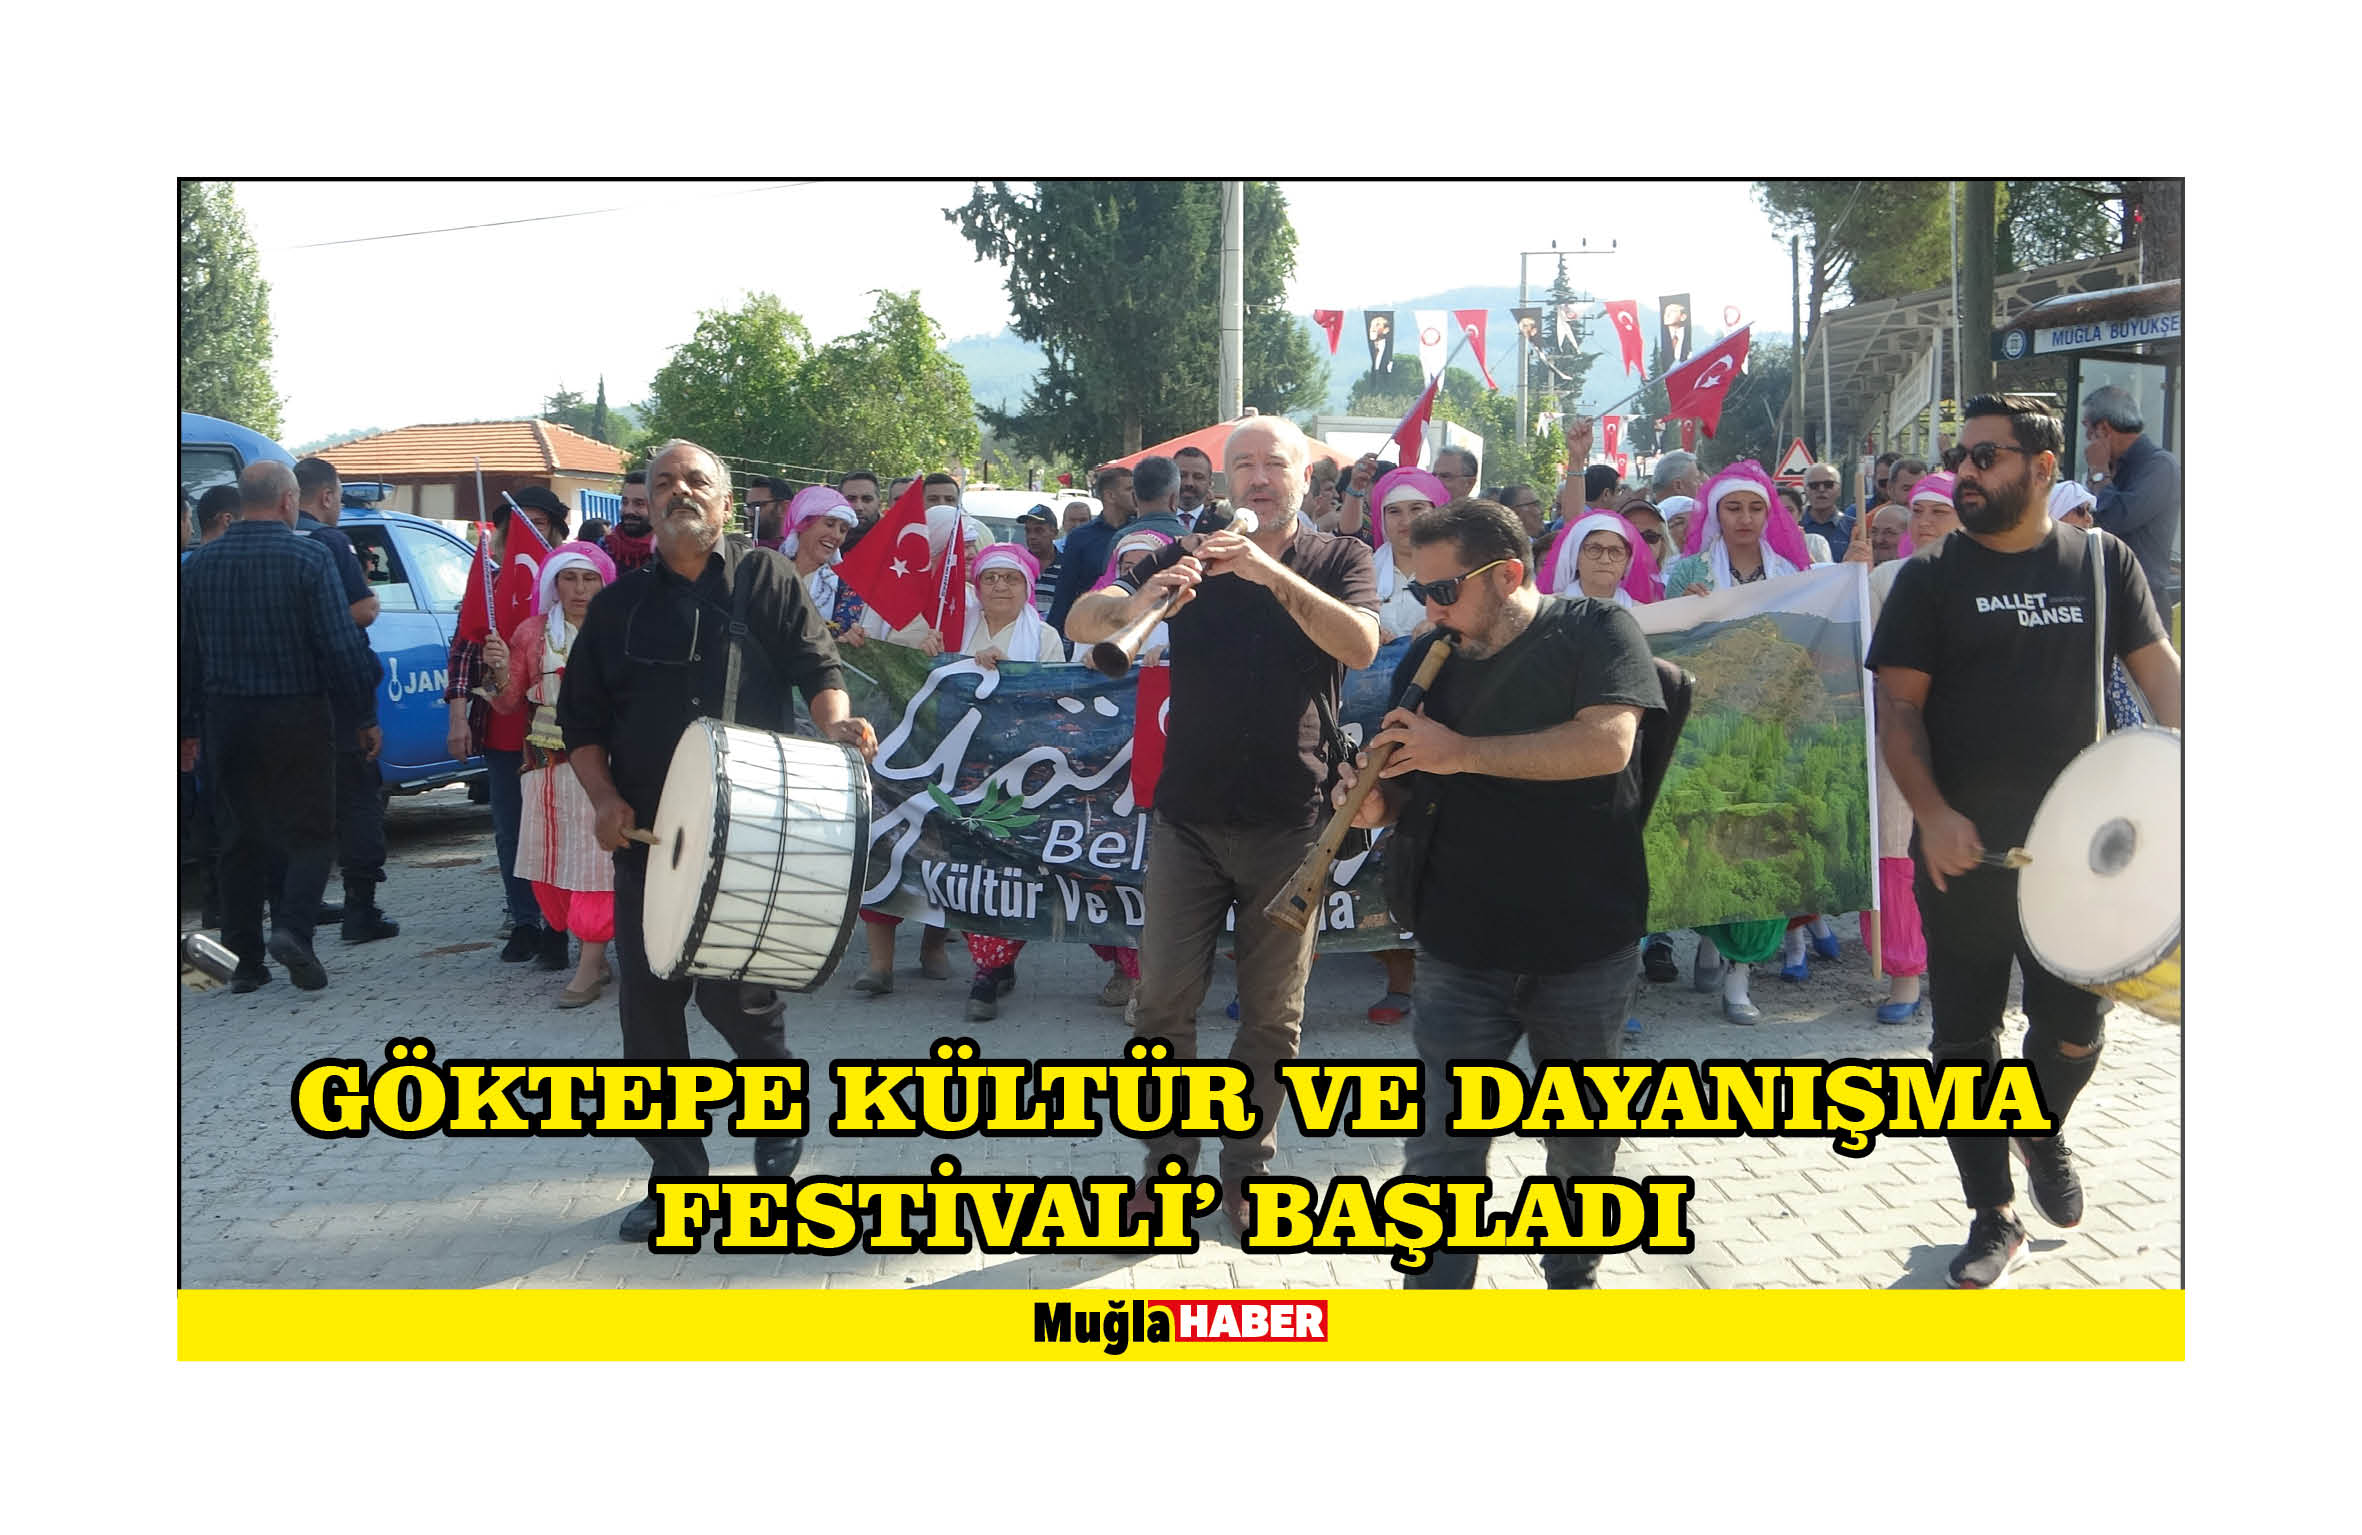 Göktepe Kültür ve Dayanışma Festivali' başladı